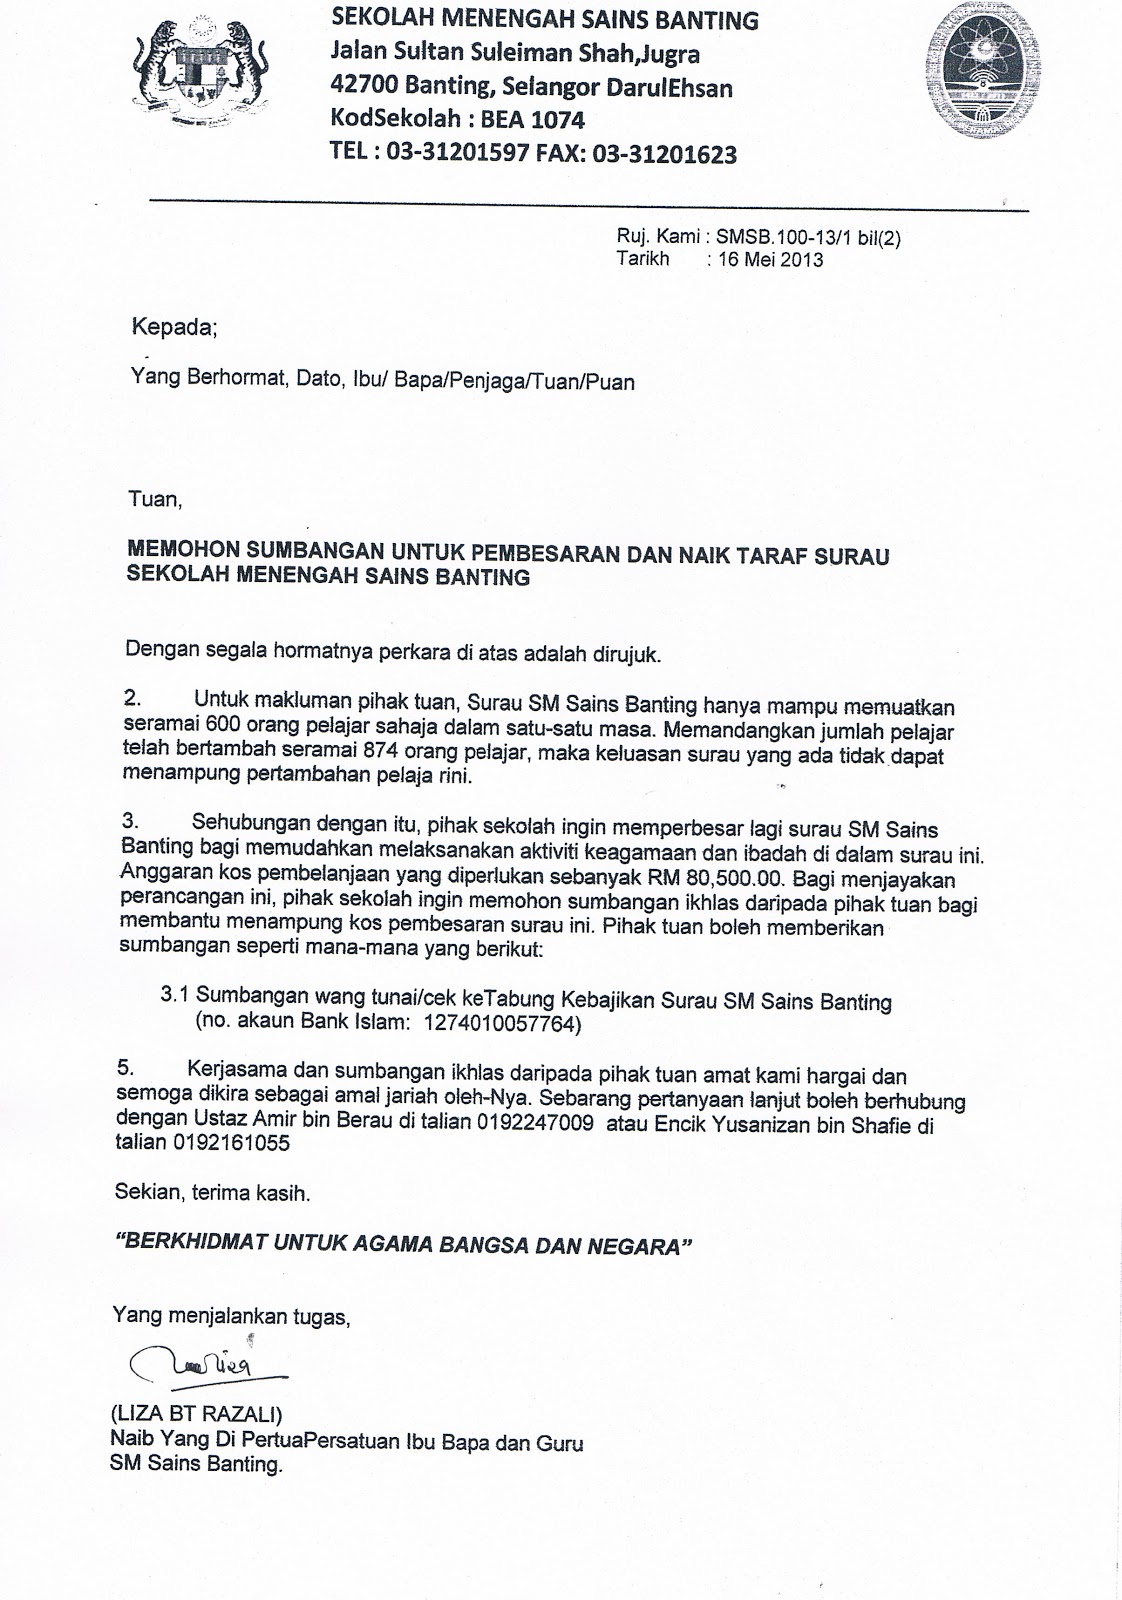 Contoh Surat Rasmi Surau Mohon Sumbangan Semperna Ramafan - KaelynvinWalker